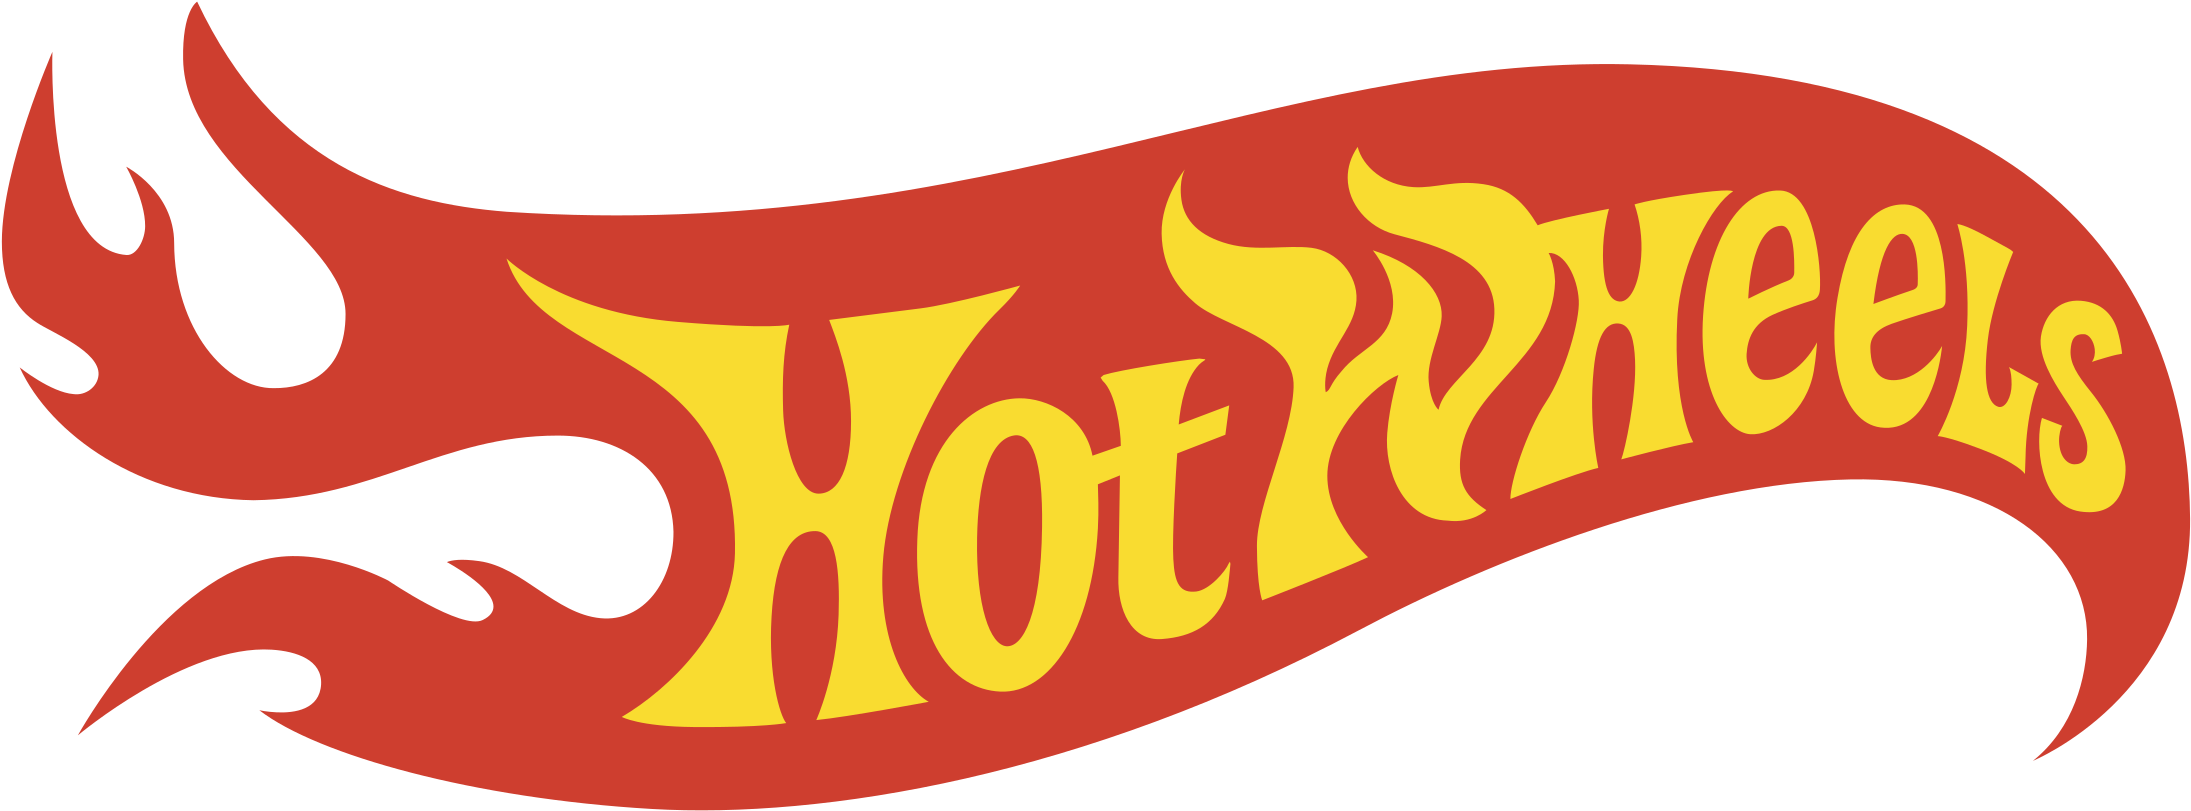 Roda panas logo Gambar Transparan